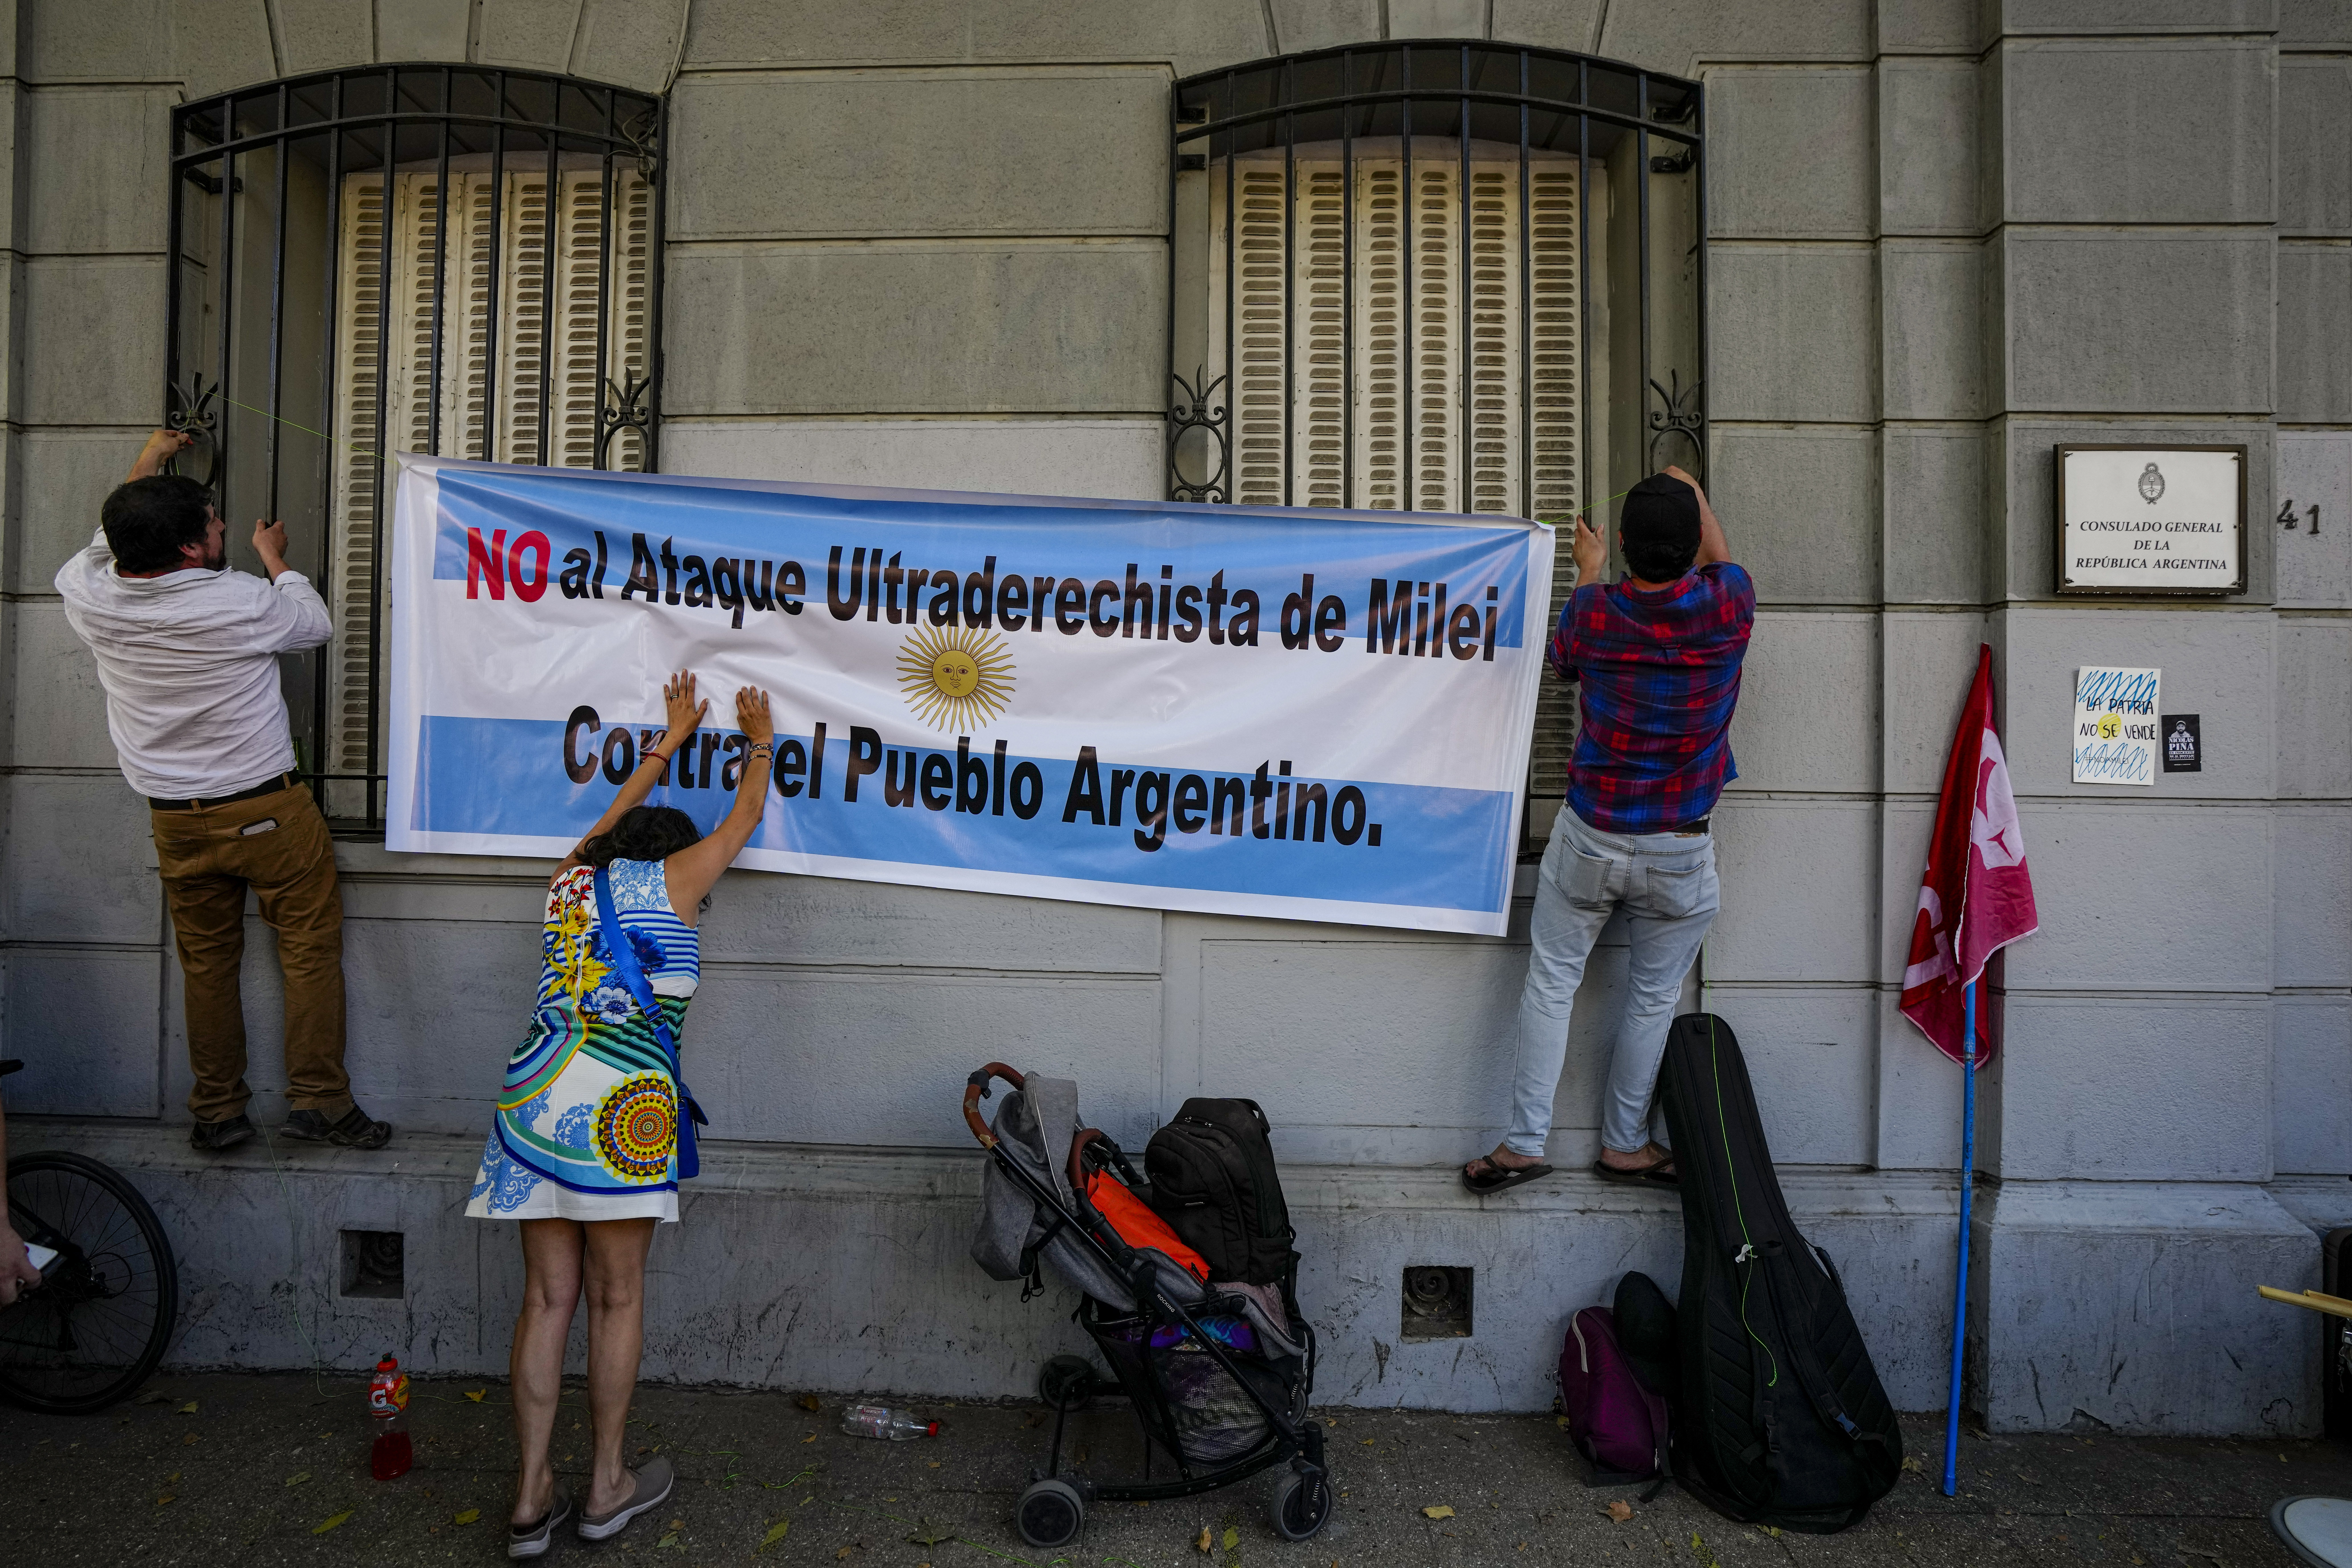 Αργεντινή: Ολοκληρώνεται η γενική απεργία που προκηρύχθηκε ενάντια στις μεταρρυθμίσεις του Μιλέι